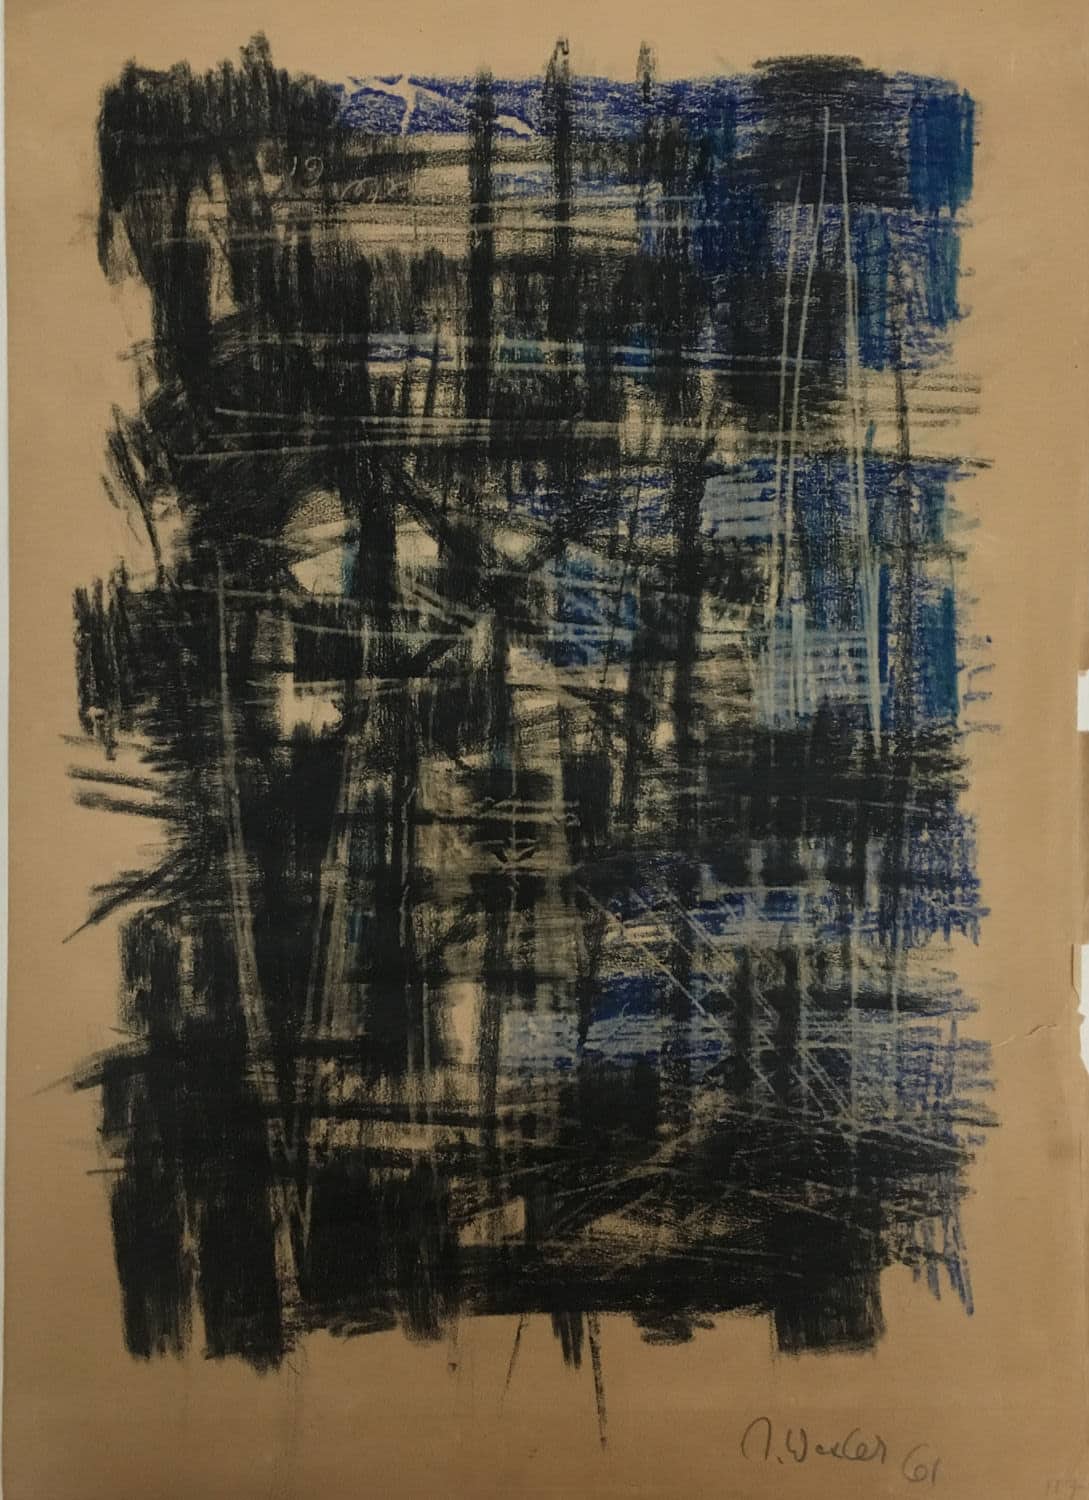 יעקב וכסלר, "ללא כותרת" 1961, גירי פסטל על נייר, 57x37 ס"מ